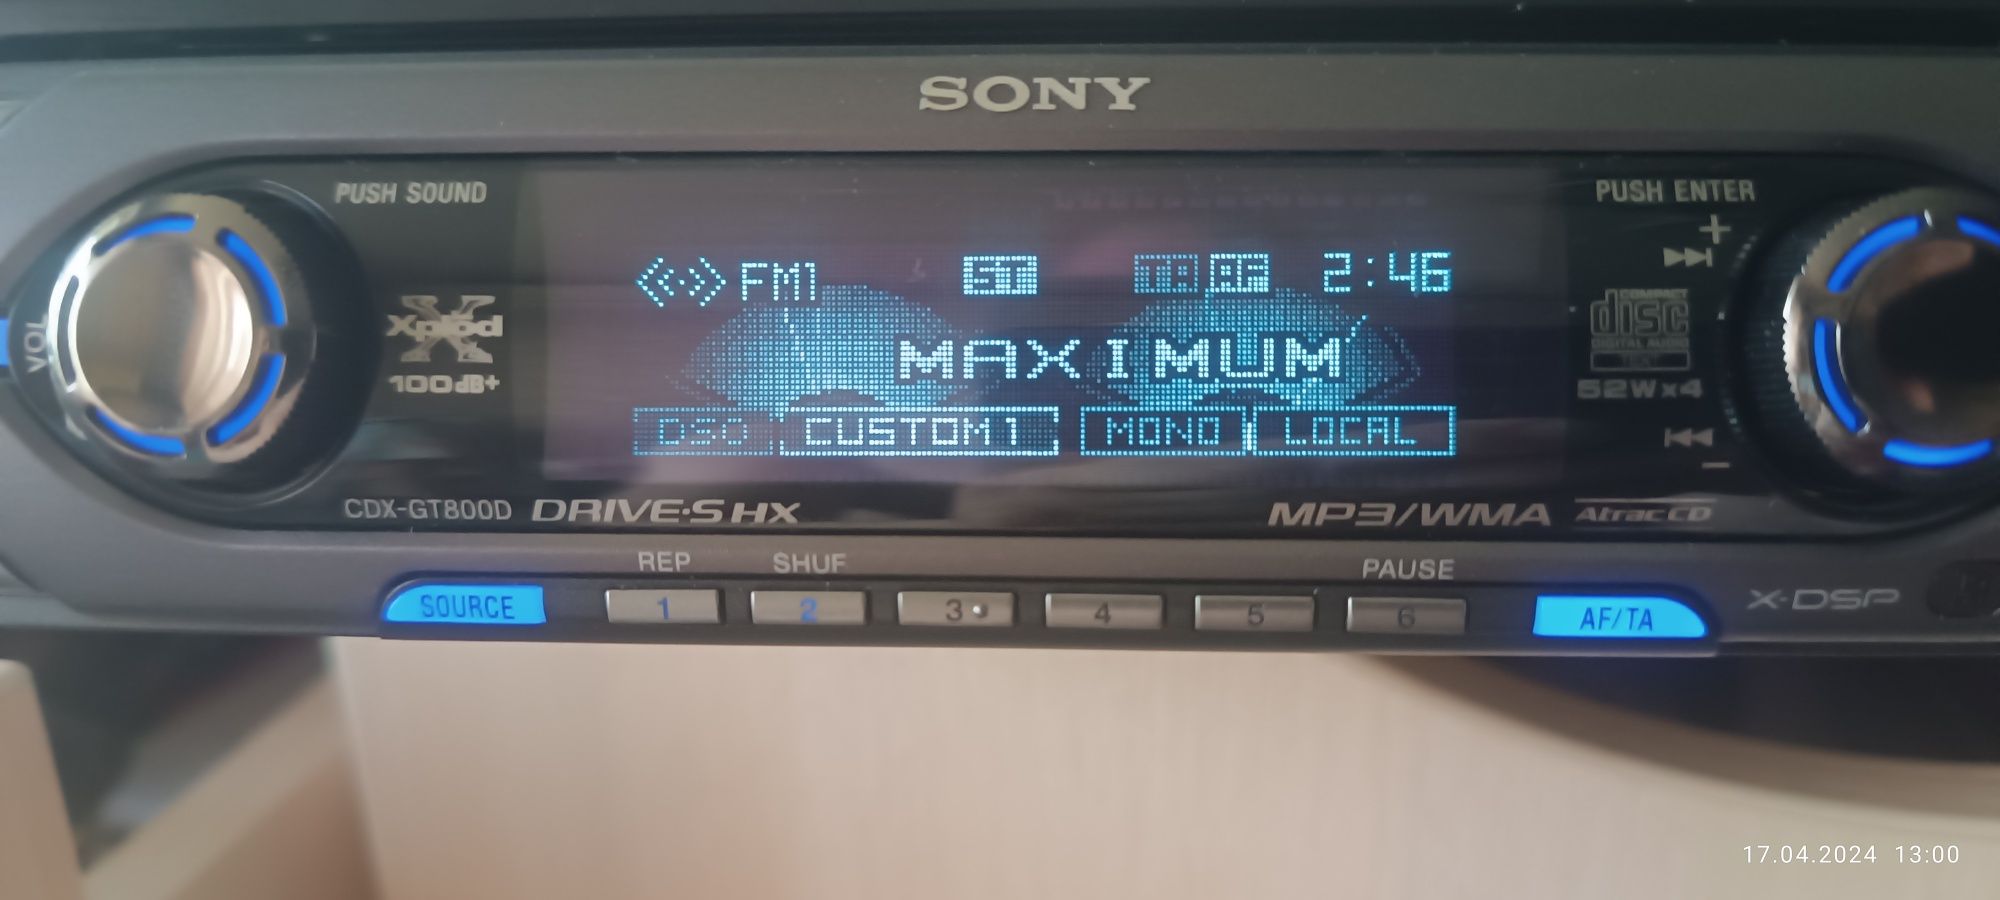 Автомагнитола Sony cdx-gt800d